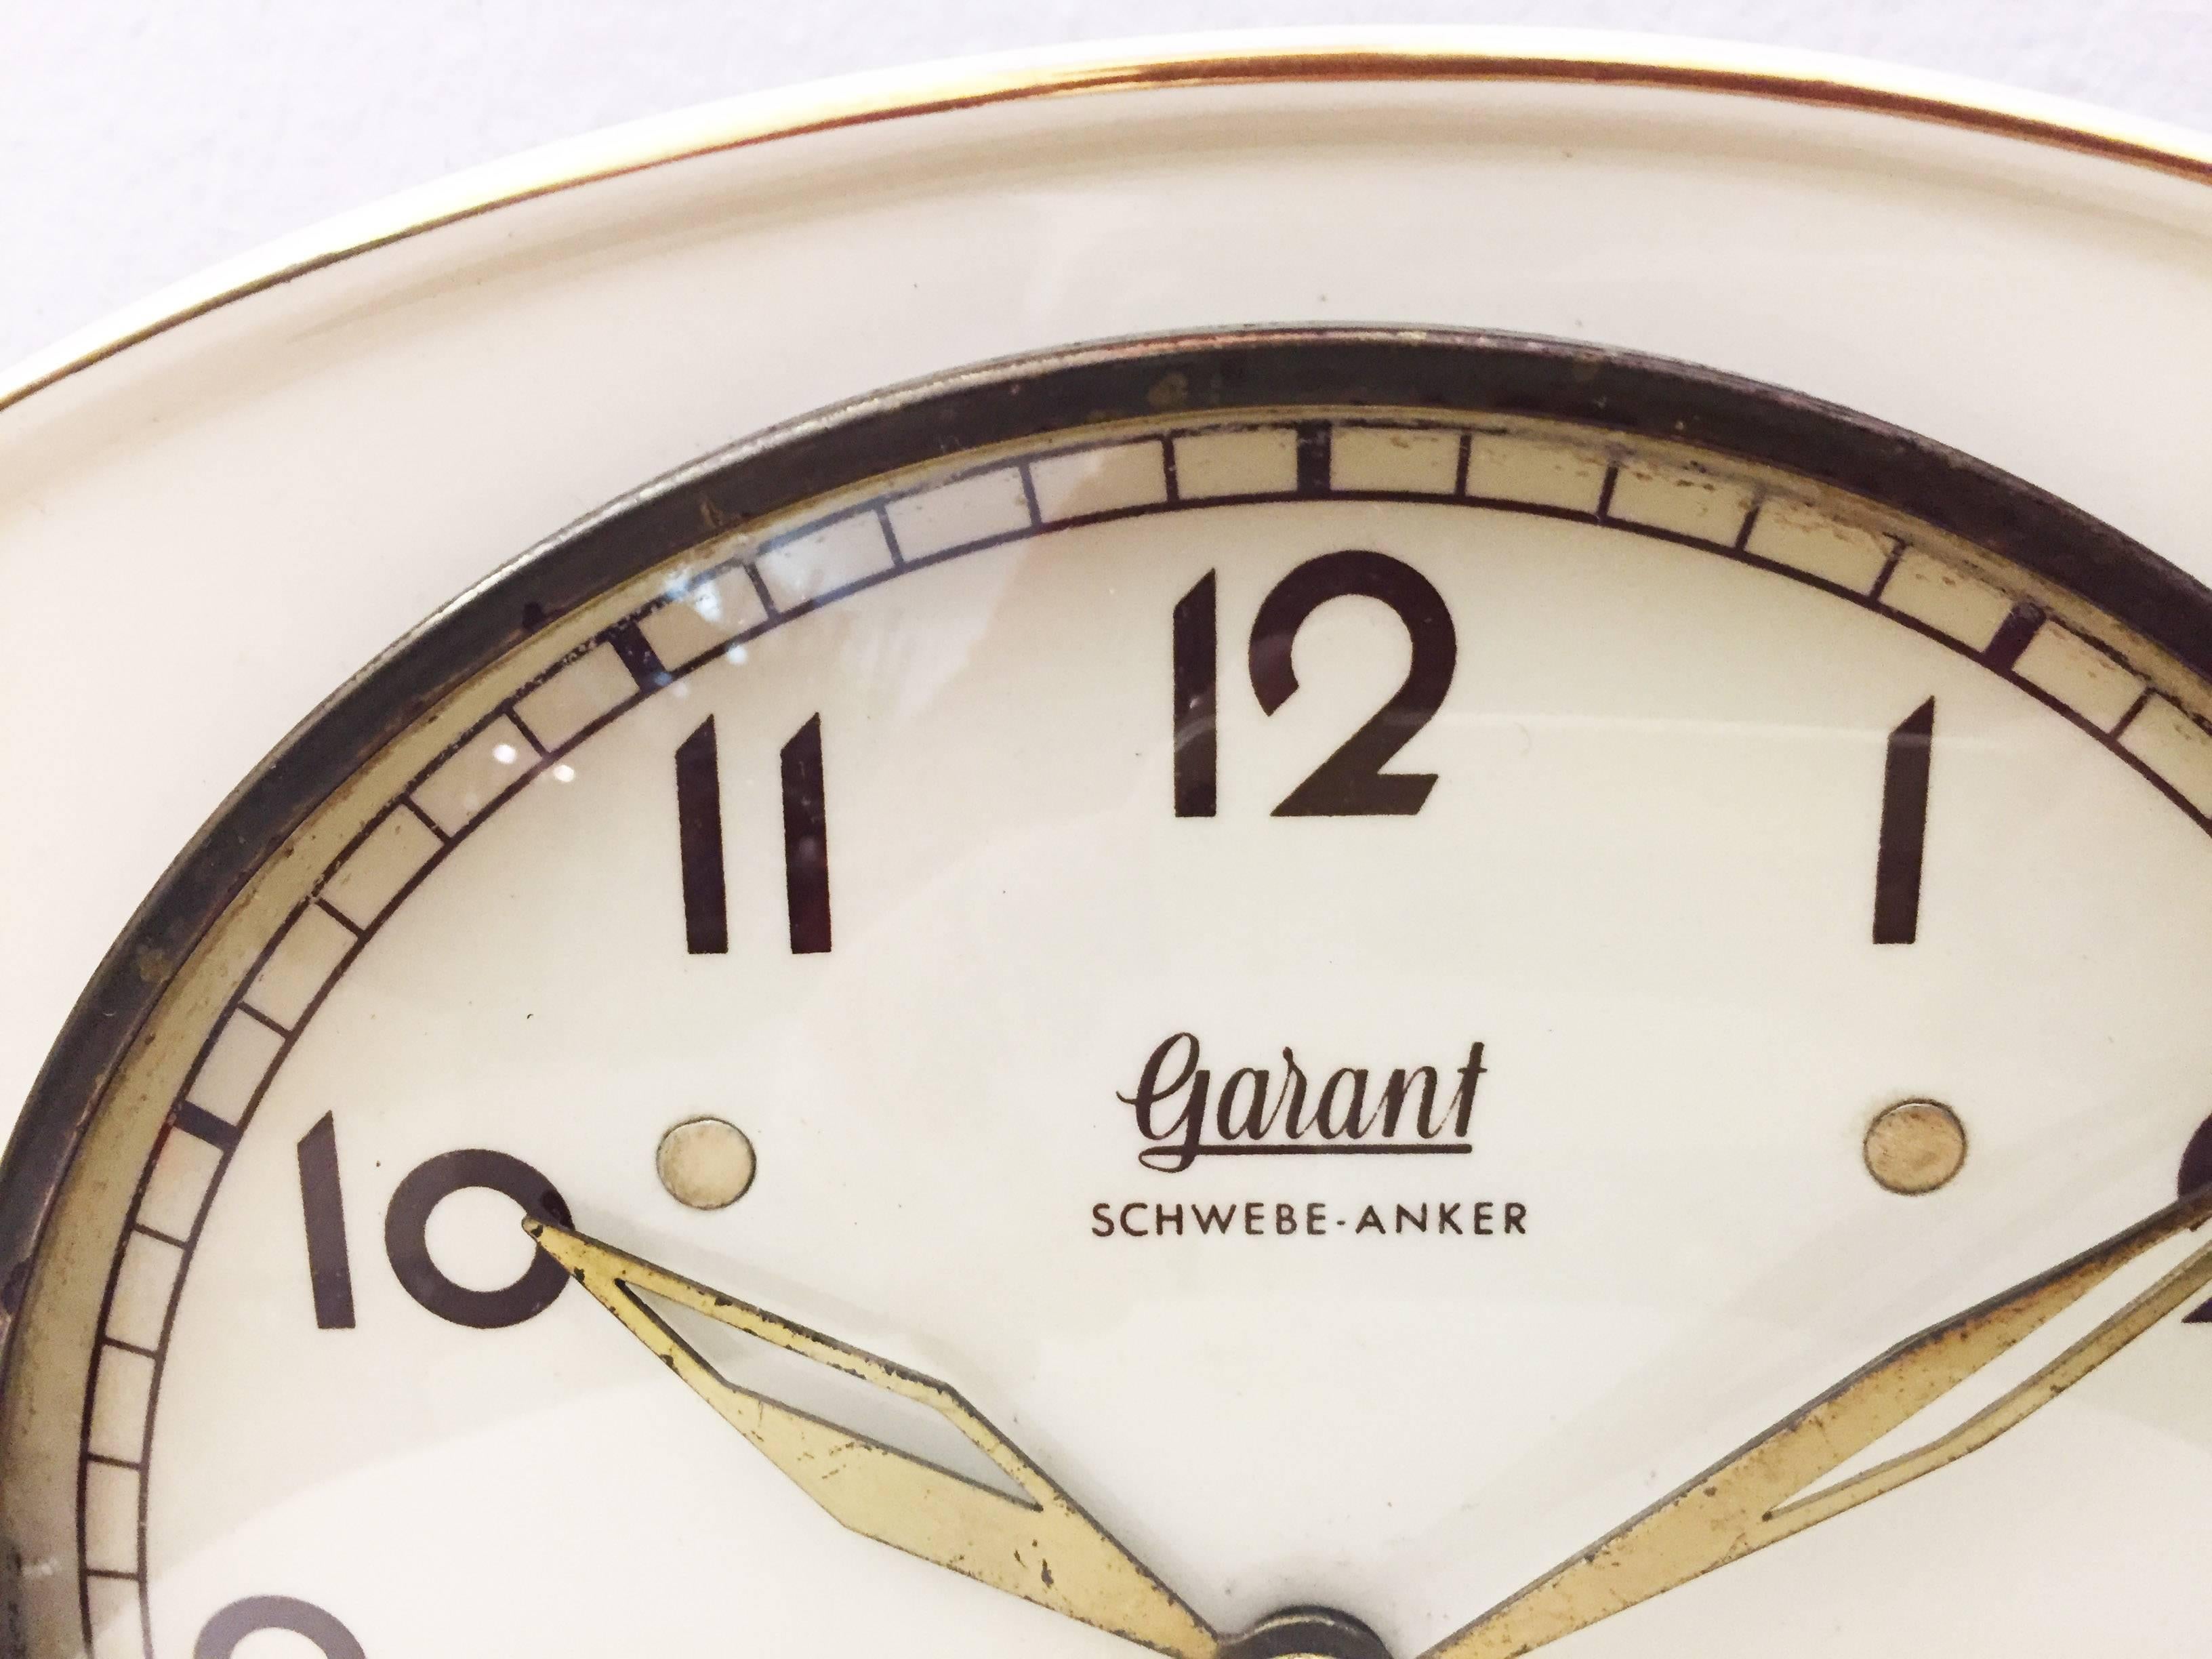 Horloge en céramique avec un mouvement mécanique à ancre flottante fabriquée par Garant (plus tard Hugo Hättich) en Allemagne au début des années 1950. 
Le délai de livraison est d'environ 2 à 3 semaines.
Le mouvement sera vérifié par un horloger